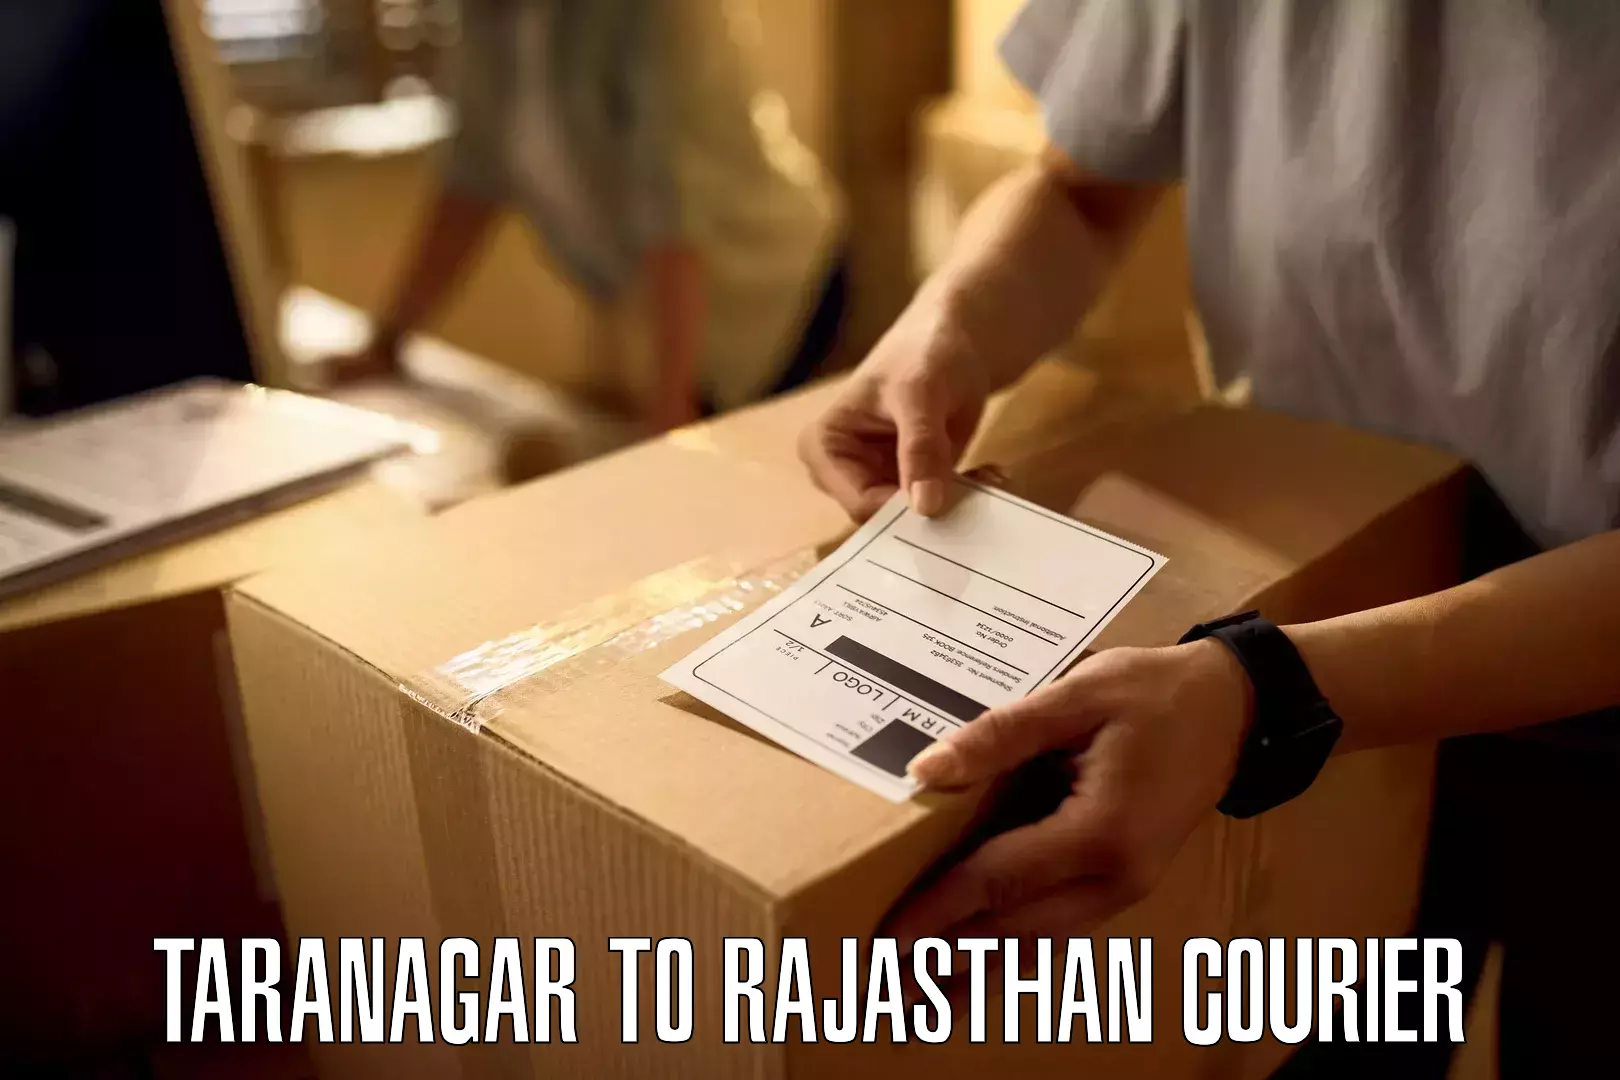 Round-the-clock parcel delivery Taranagar to Achrol